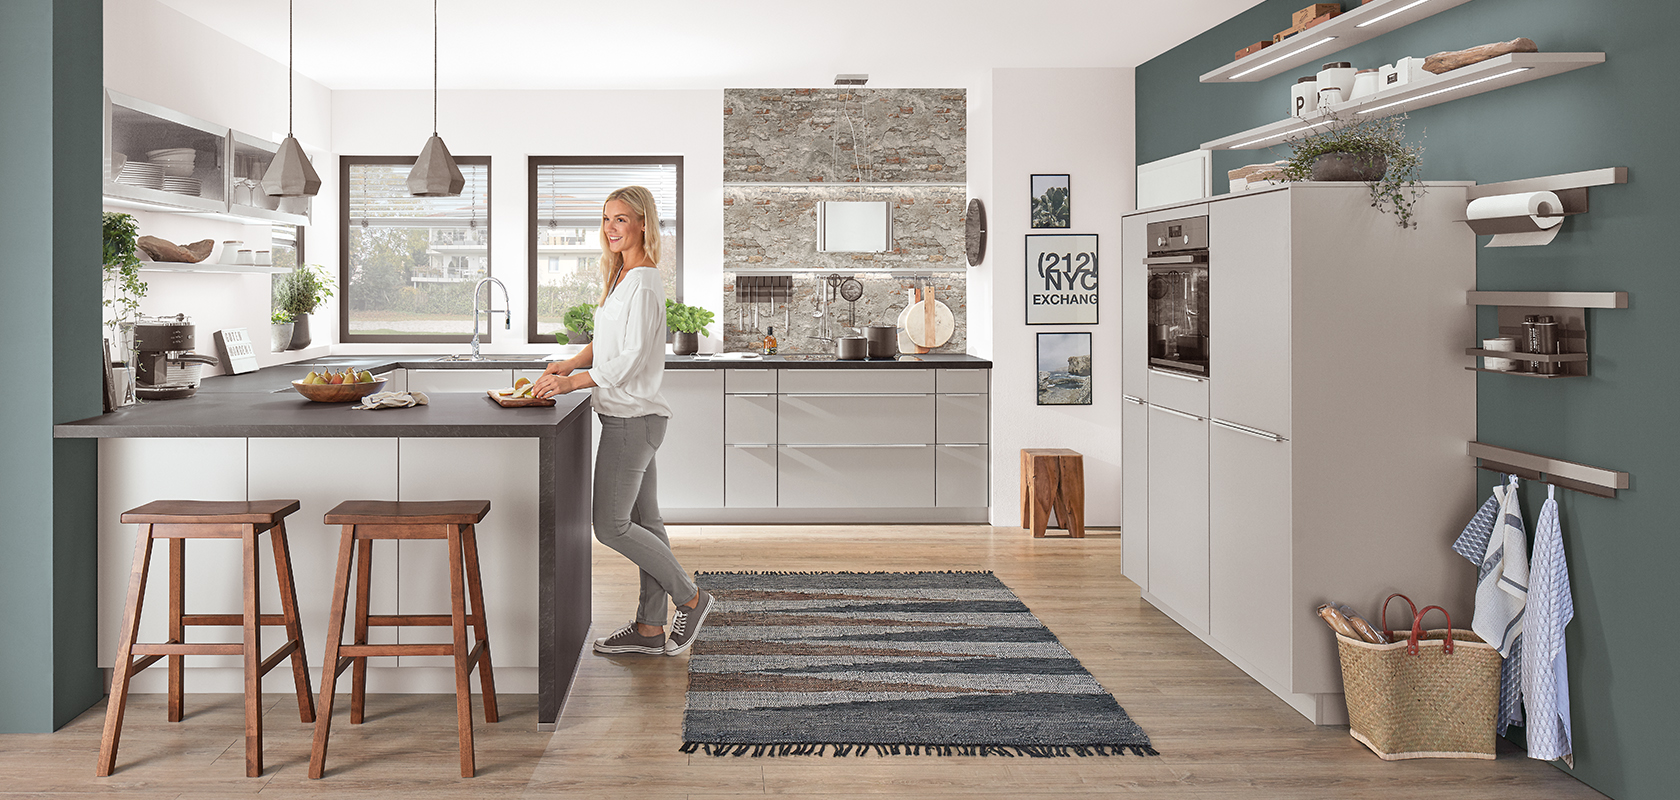 Eine moderne Küche mit elegantem Design, die eine zentrale Insel, Pendelleuchten und Holzakzente bietet, ergänzt durch eine Frau, die mit dem Raum interagiert.